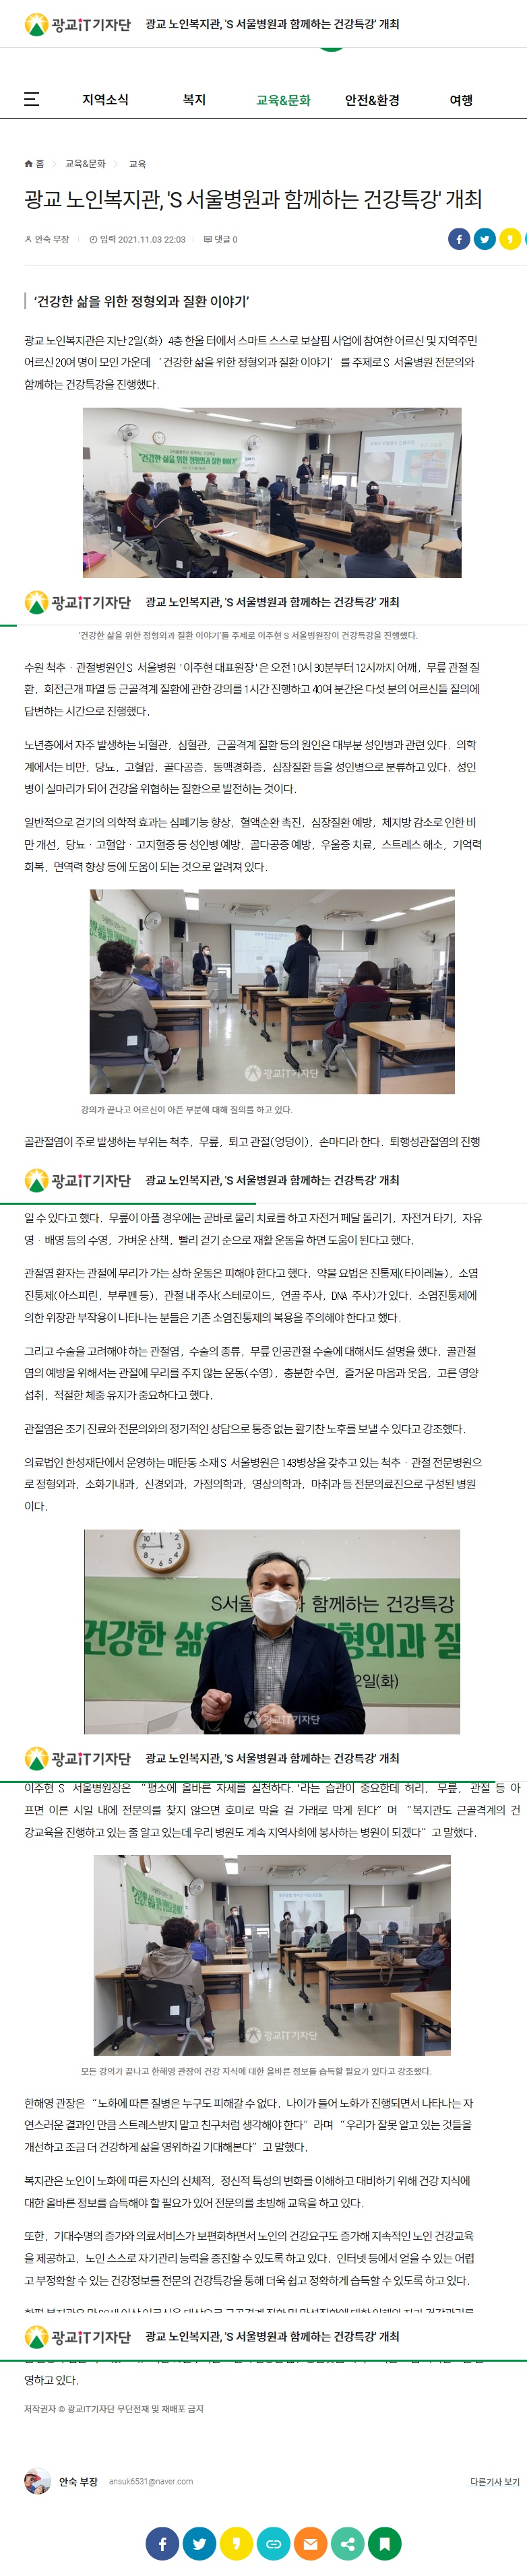 광교 노인복지관, 'S 서울병원과 함께하는 건강특강' 개최.jpg